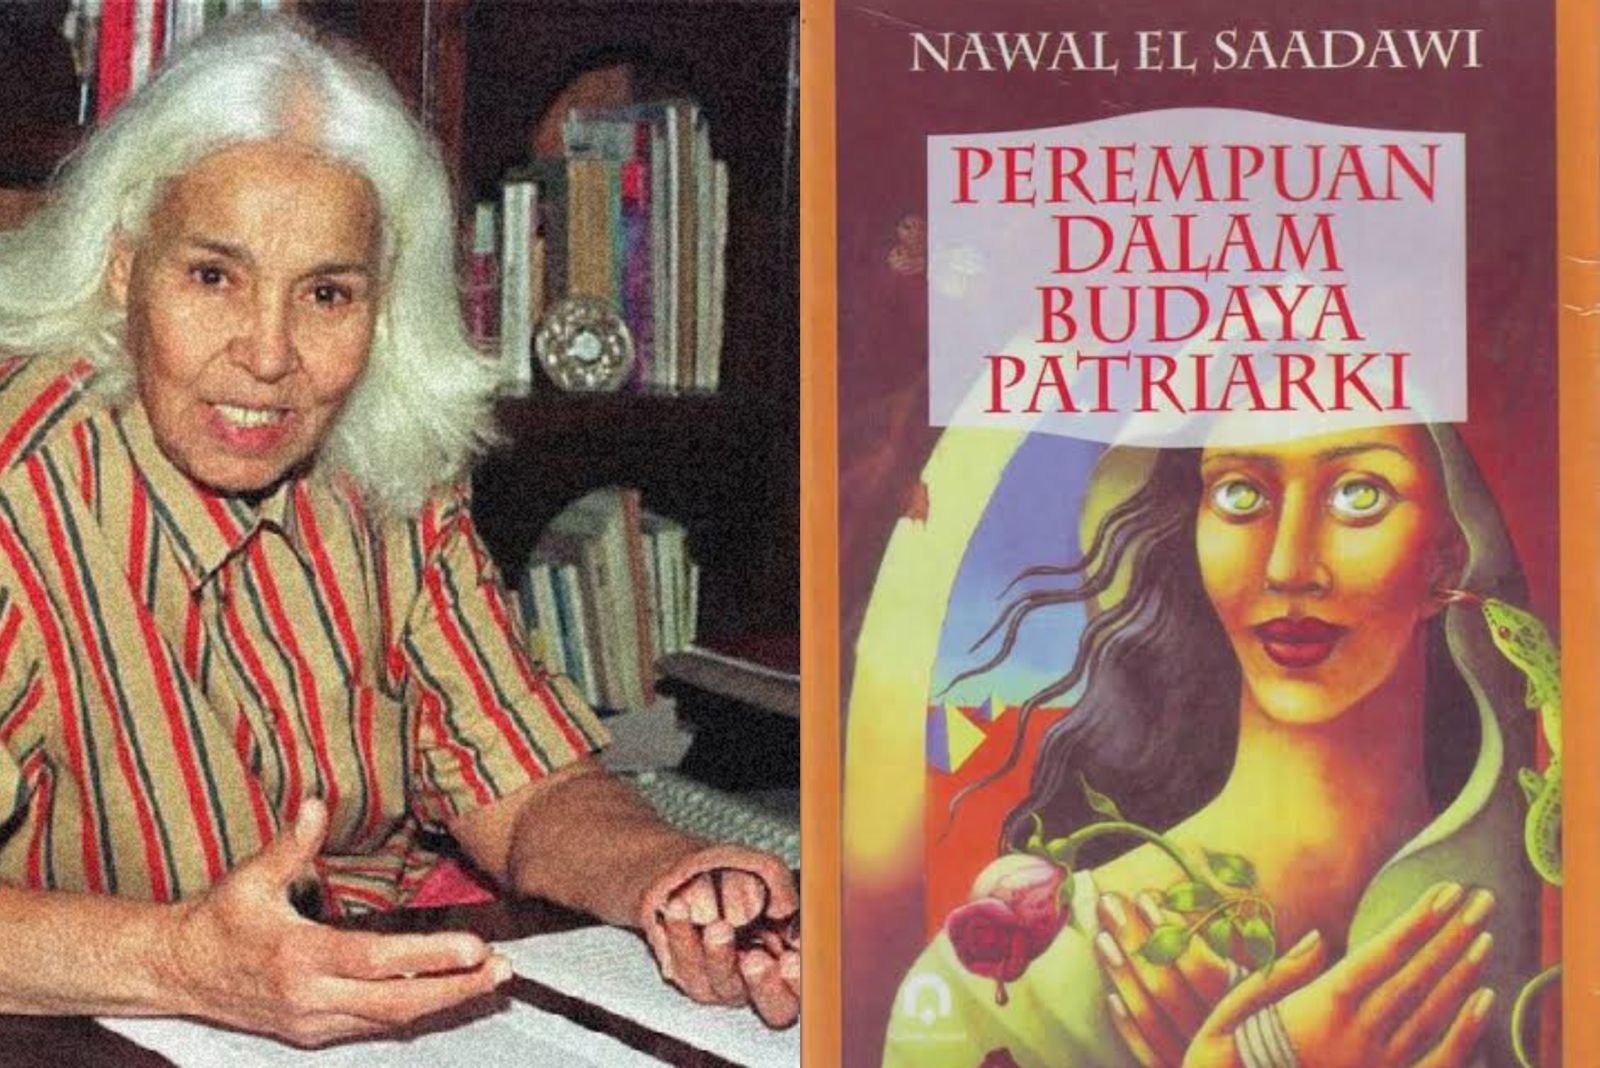 Buku Nawal El Saadawi Berjudul 'Perempuan dalam Budaya Patriarki' (Image Source: Lintasjakarta/Putri)